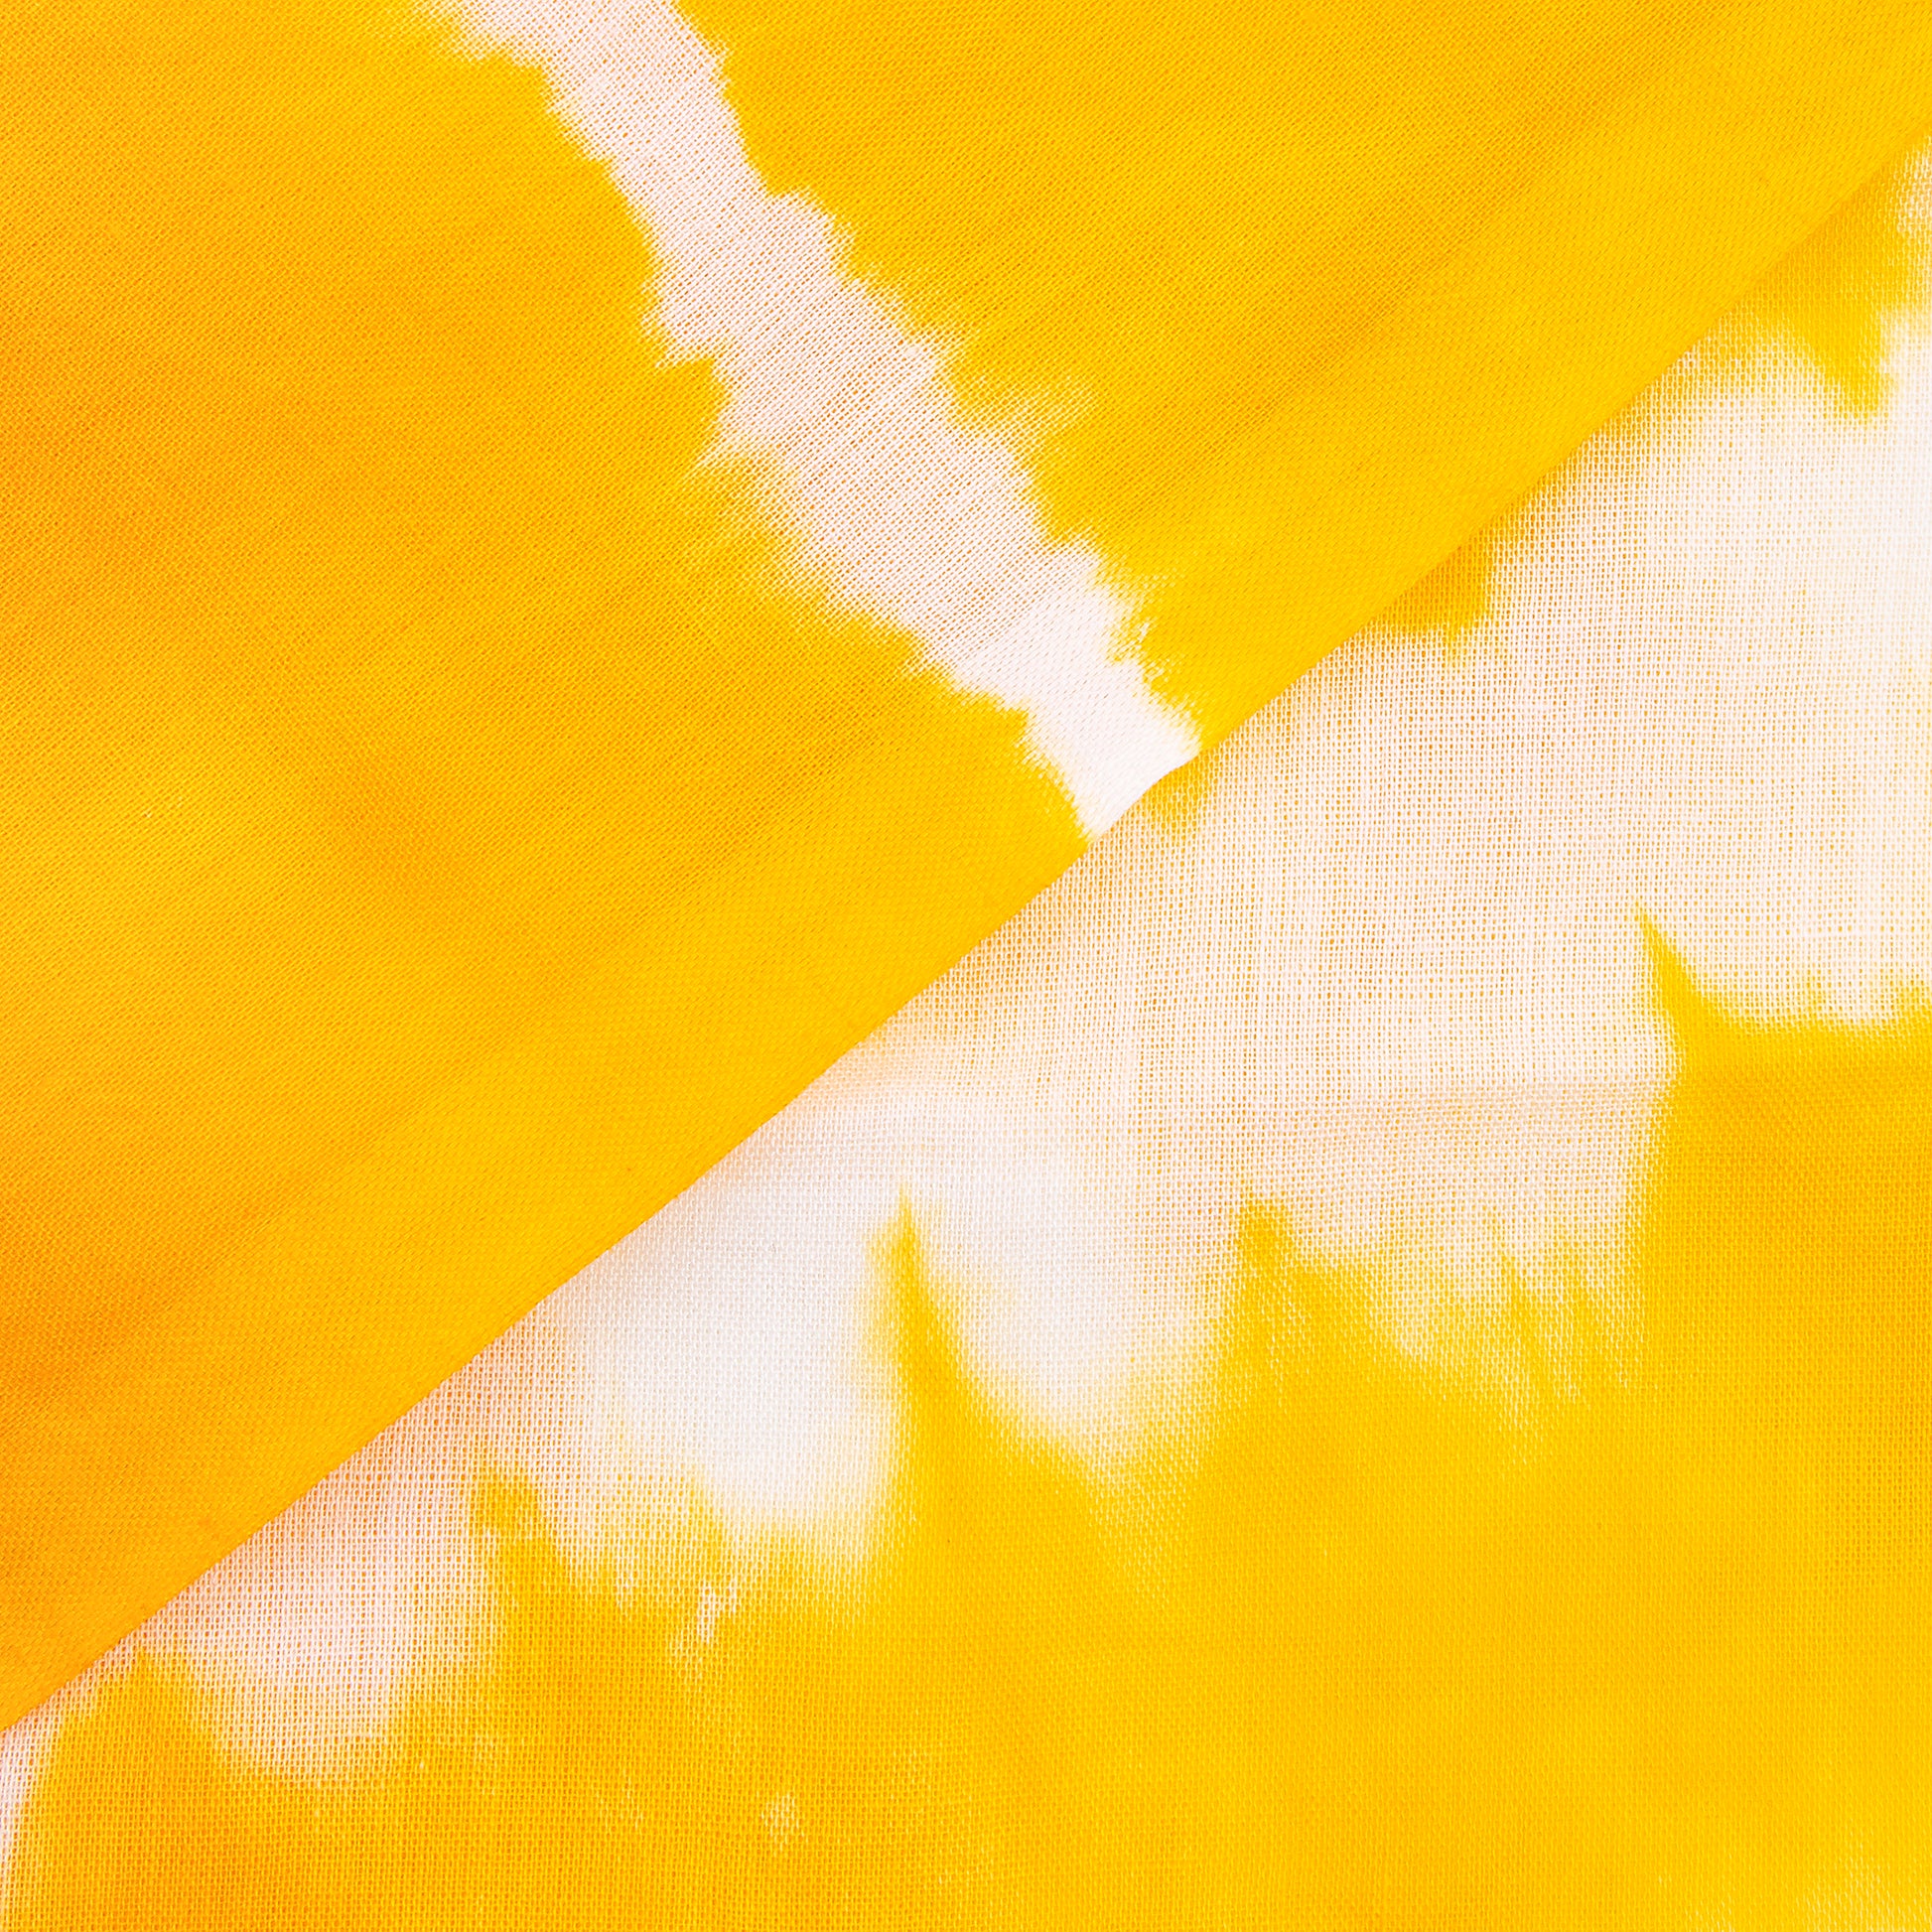 Yellow Tie Dye Shibori Print Dress Cotton Fabric Material Online